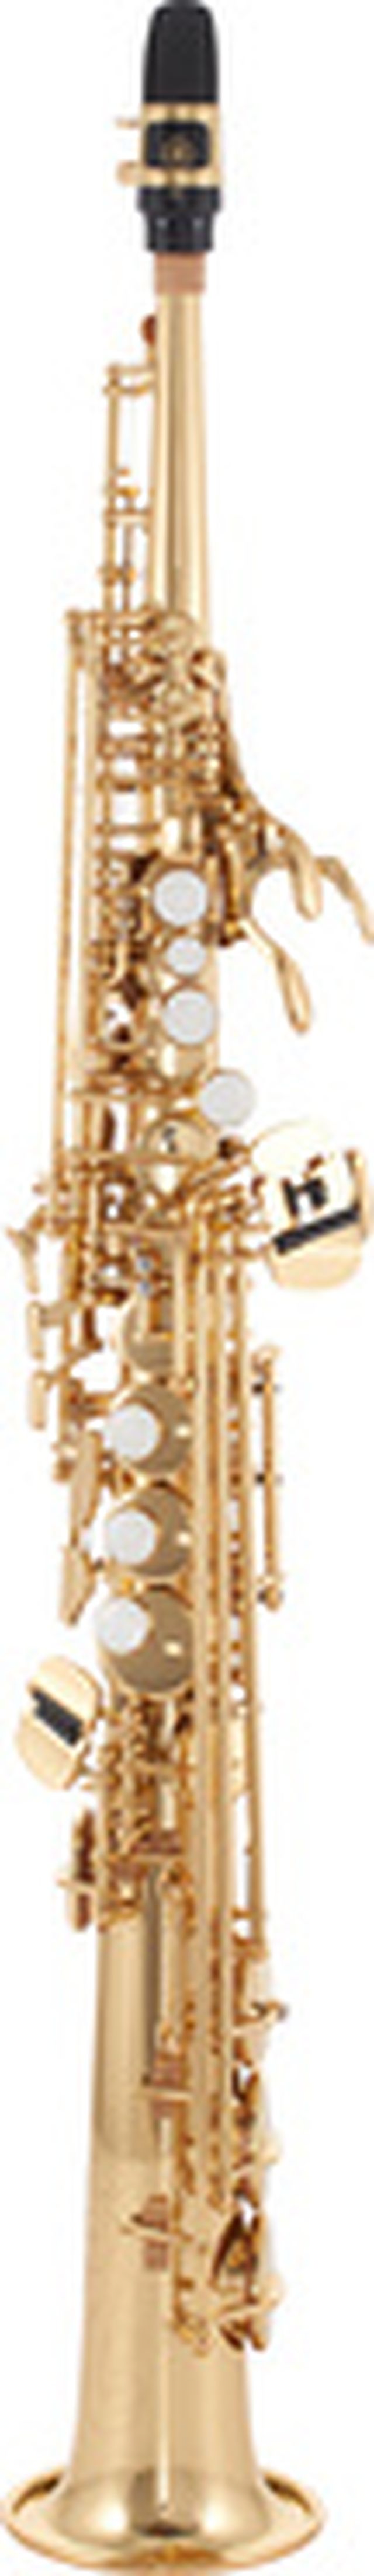 Yamaha YSS-475 II Soprano Sax